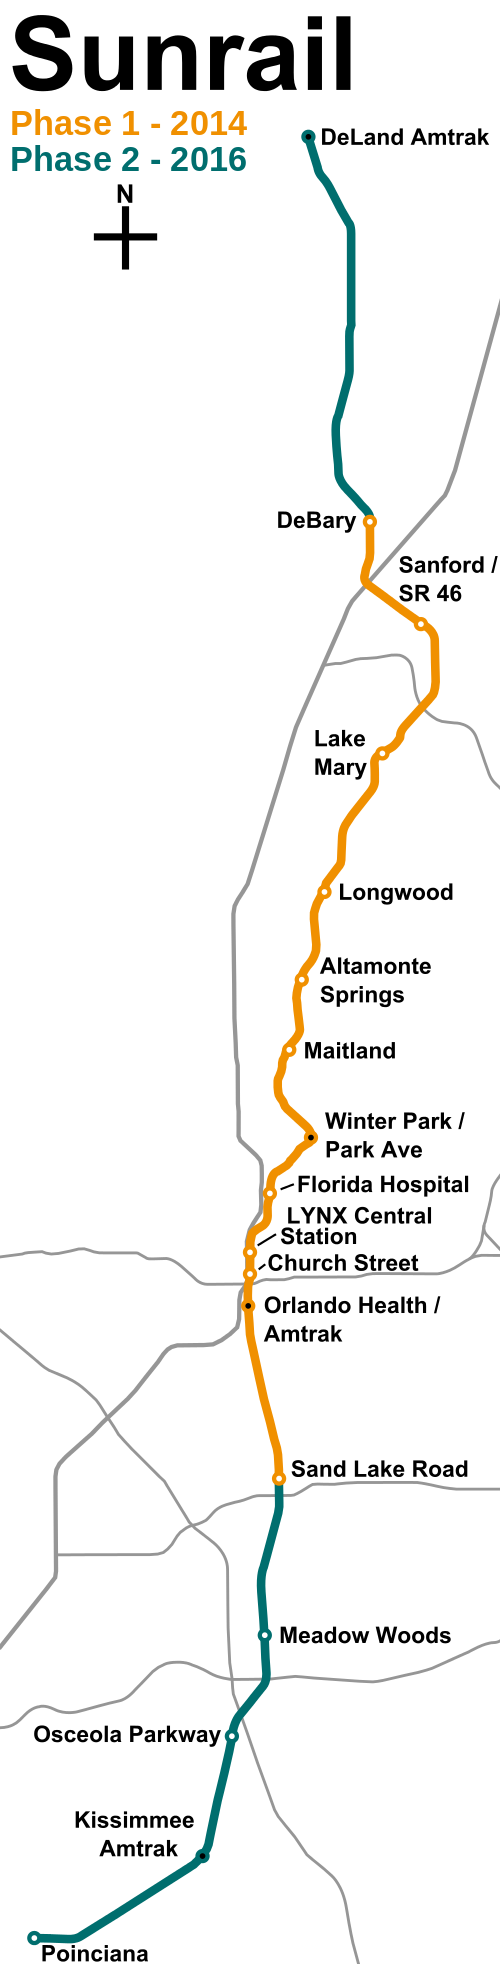 A SunRail jelenlegi és tervezett szakaszai. A bővítés 2016-ban esedékes<br>(forrás: Wikipedia)